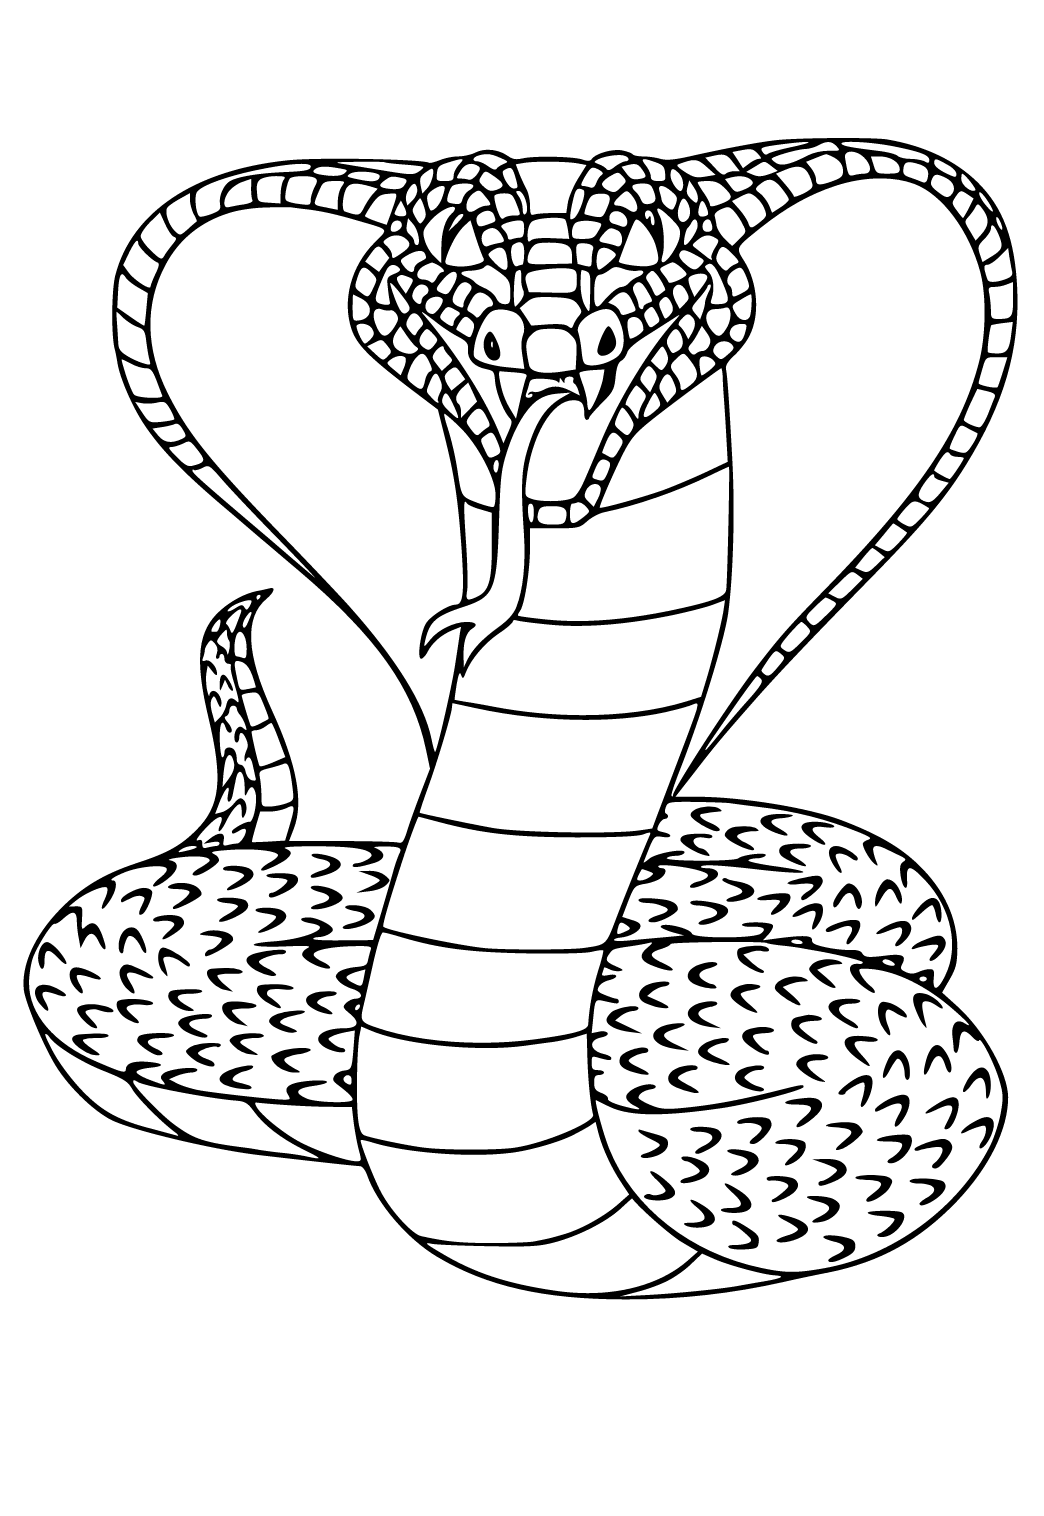 Rắn Vẽ King cobra Cobras  hình xăm con rắn png tải về  Miễn phí trong  suốt Đen Và Trắng png Tải về